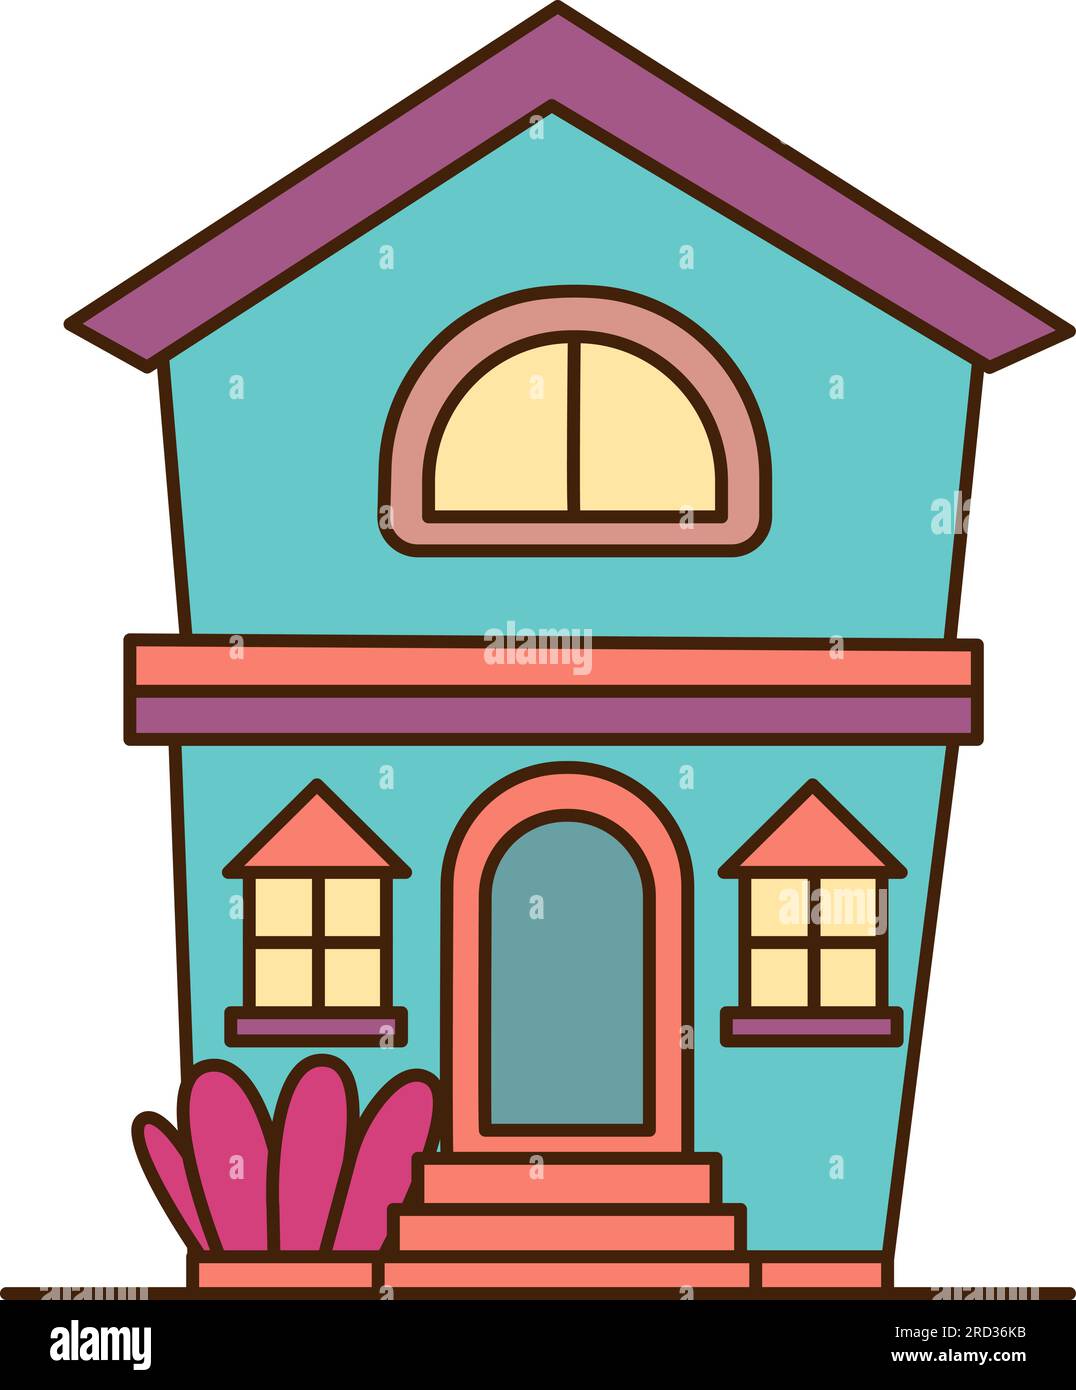 Vektorblaues Haus mit zwei Etagen Ikone. Vector Cartoon House mit pinkfarbenem Dach und zwei Fenstern Symbol. Stock Vektor